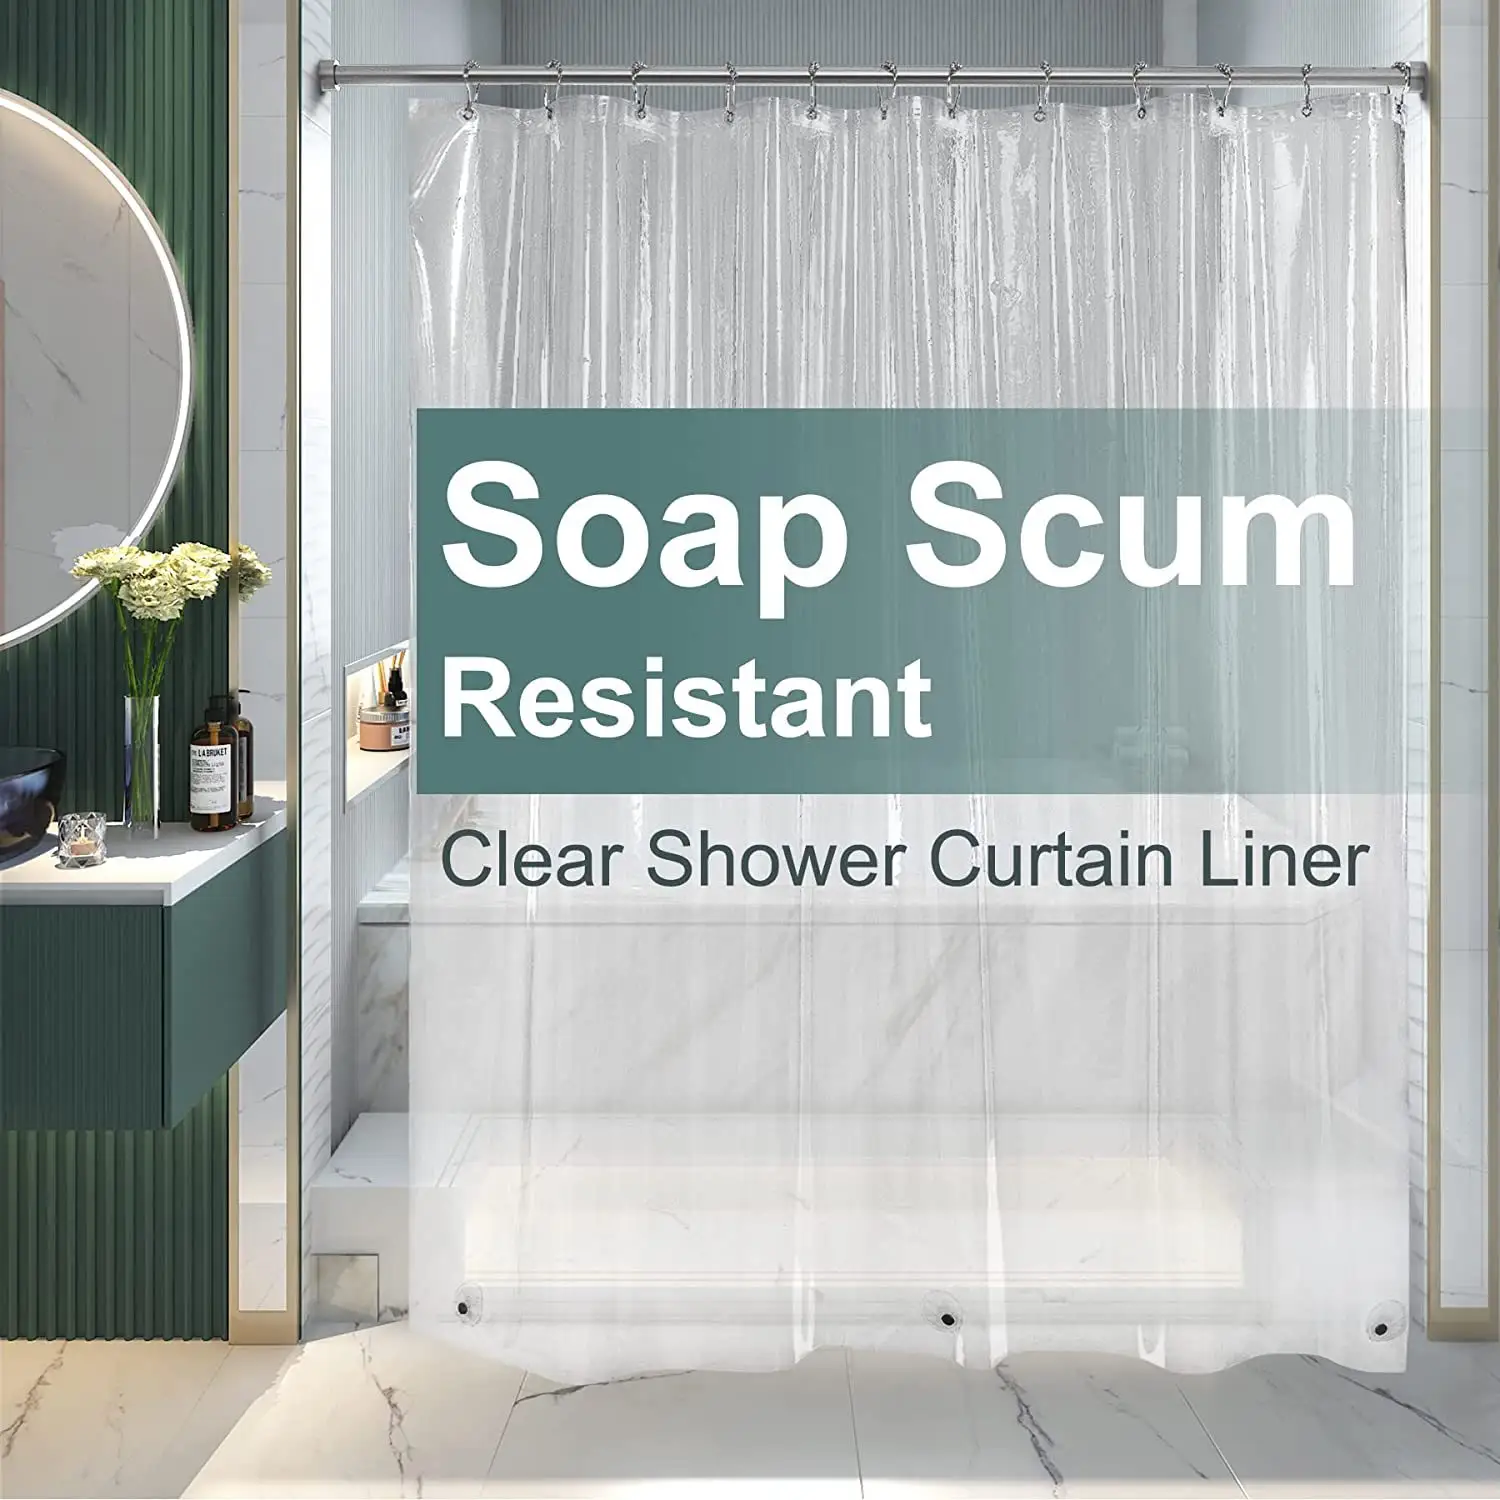 Forro de cortina de ducha de PEVA transparente con 3 imanes sello resistente a la espuma de jabón para cortina de baño forro de ducha transparente de plástico